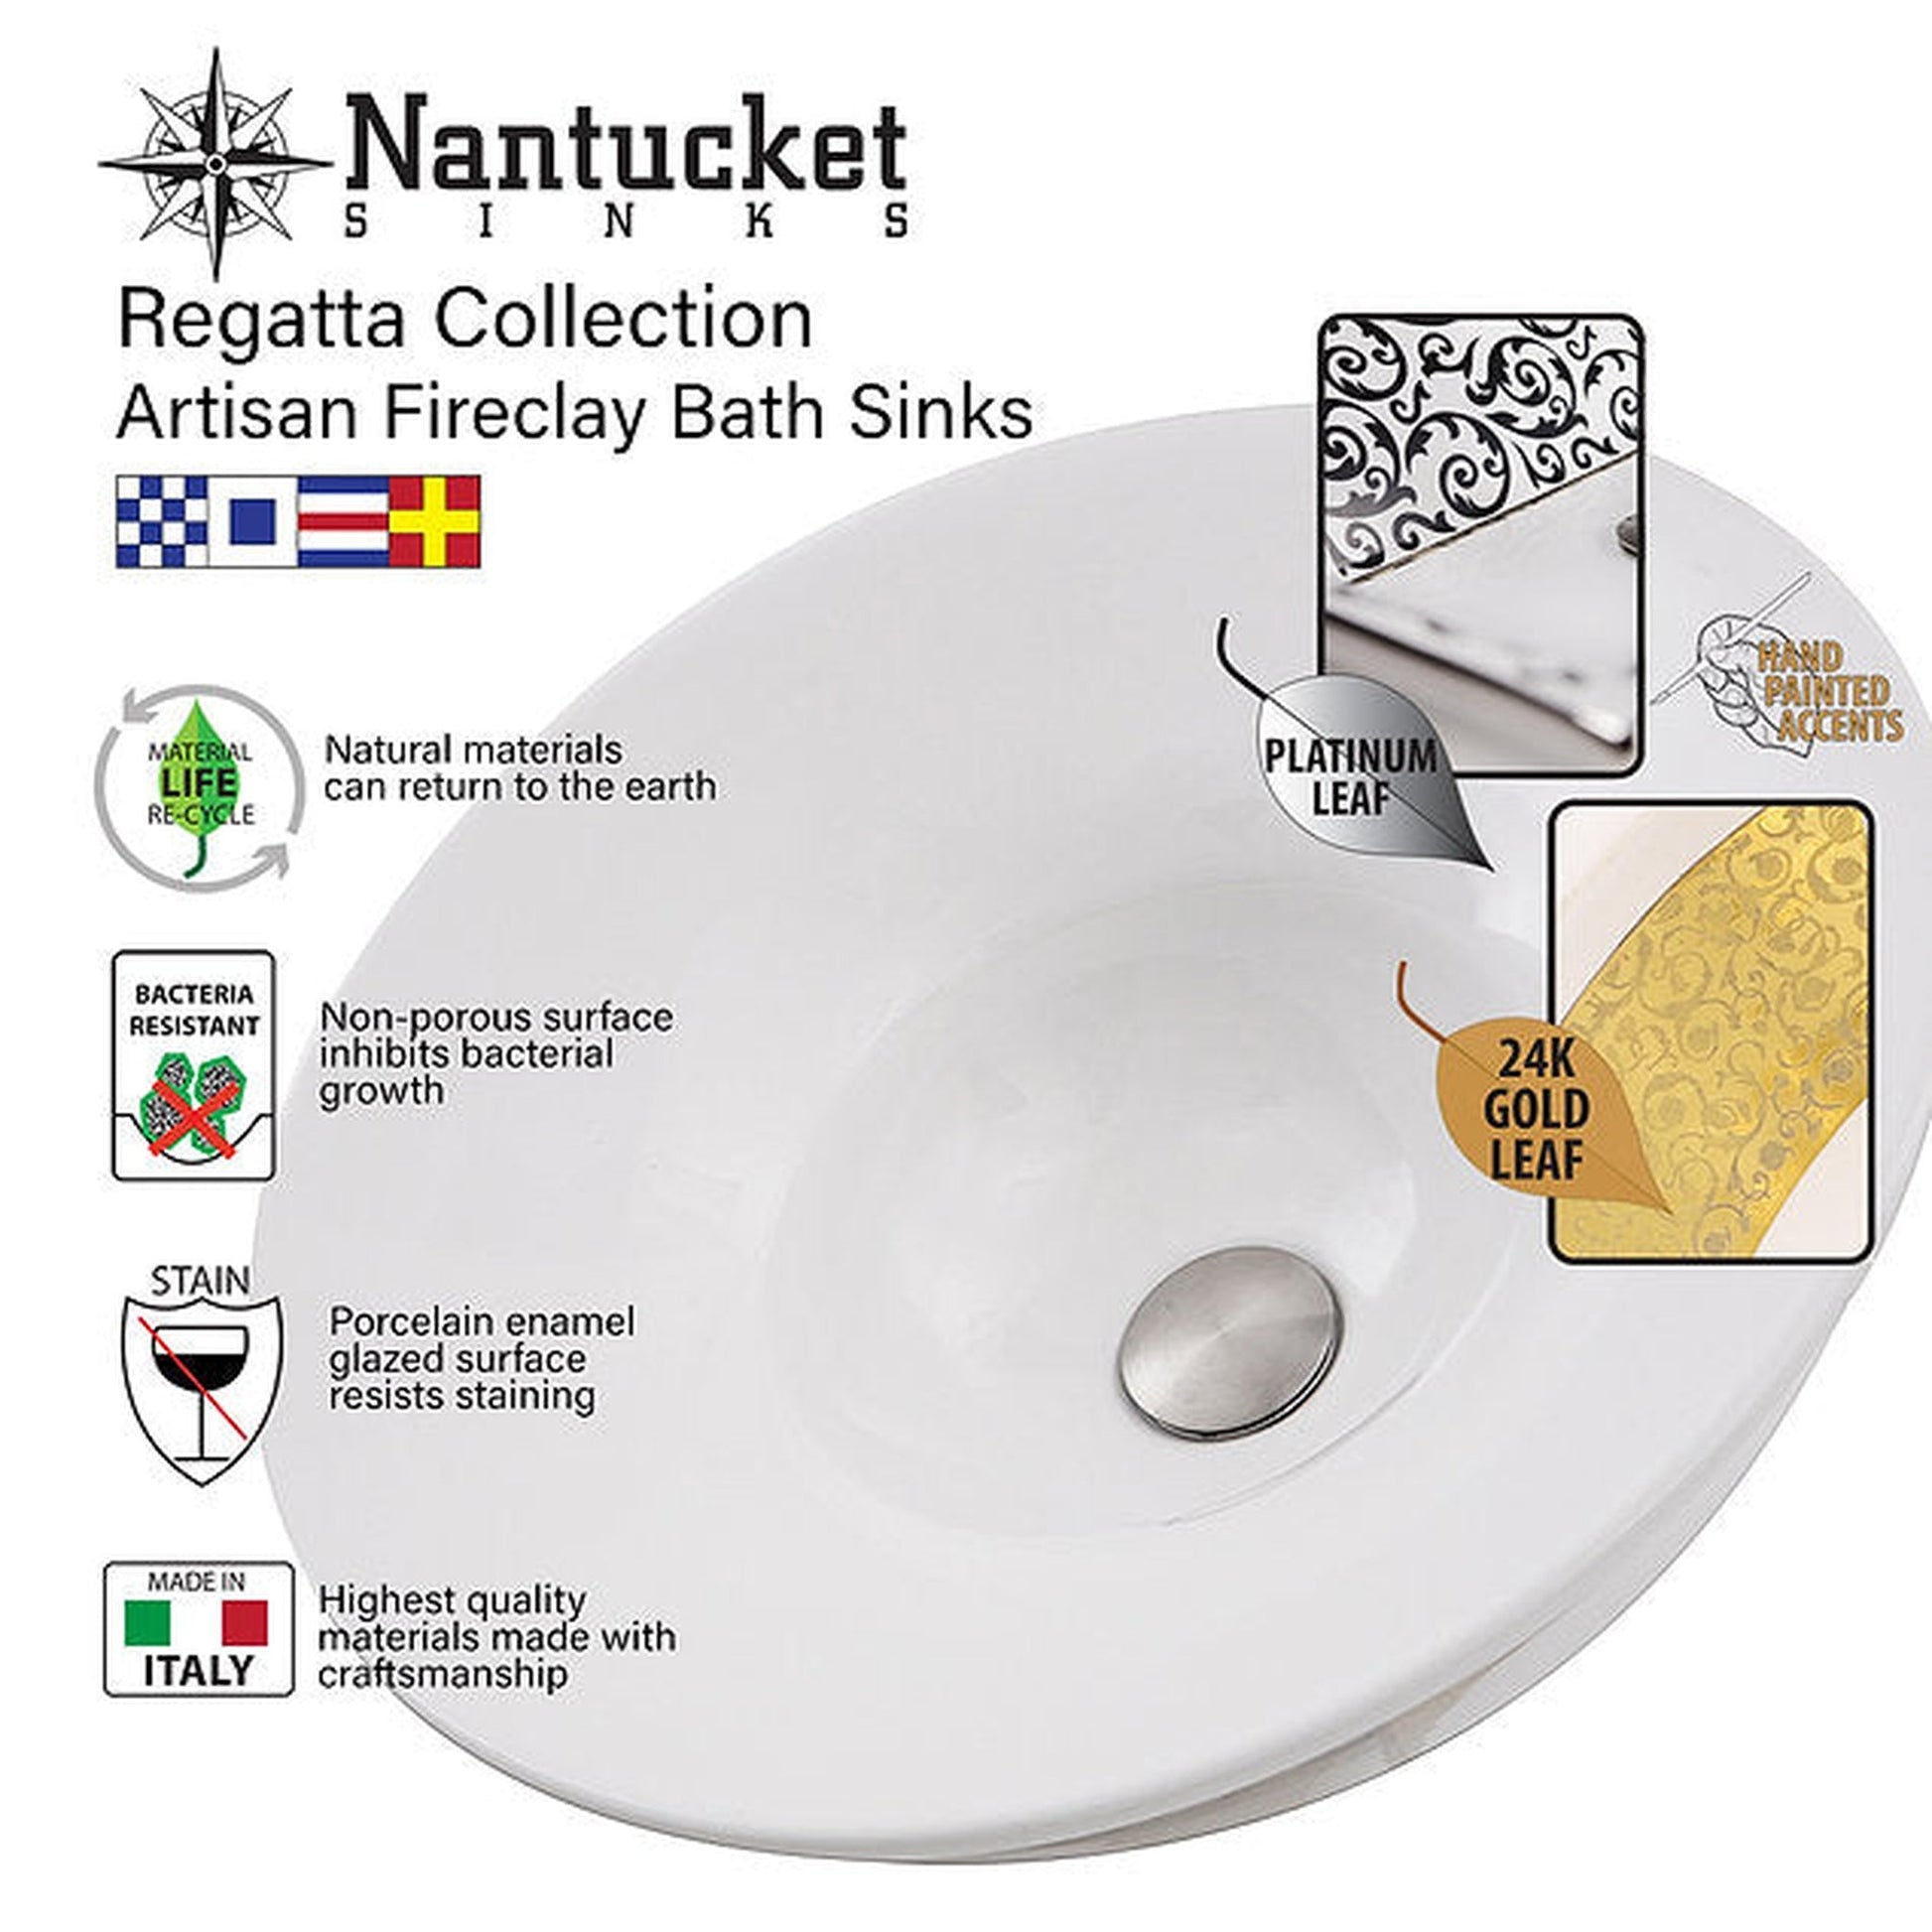 Nantucket Sinks Regatta 16" Monte Carlo Italian Fireclay Round Platinum Glazed Vessel Sink